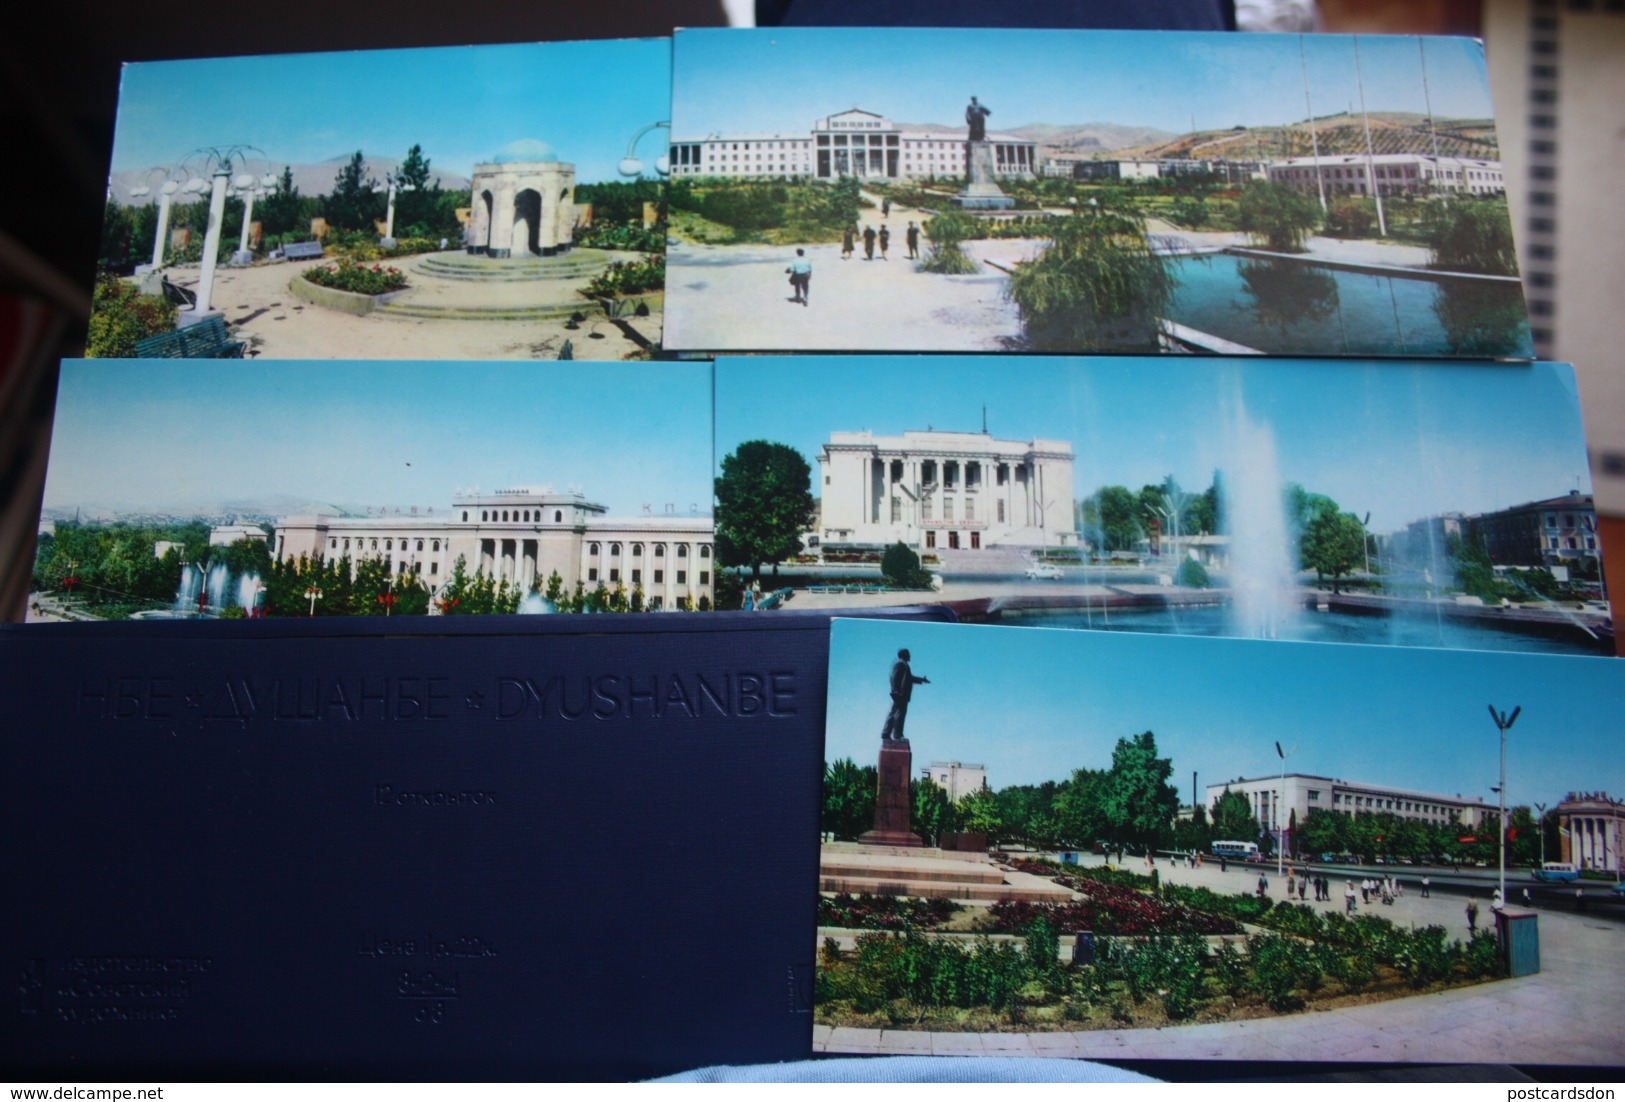 TAJIKISTAN  Dushanbe  Capital.  11 Postcards Lot  - Old USSR Postcard  - 1960s - Tajikistan